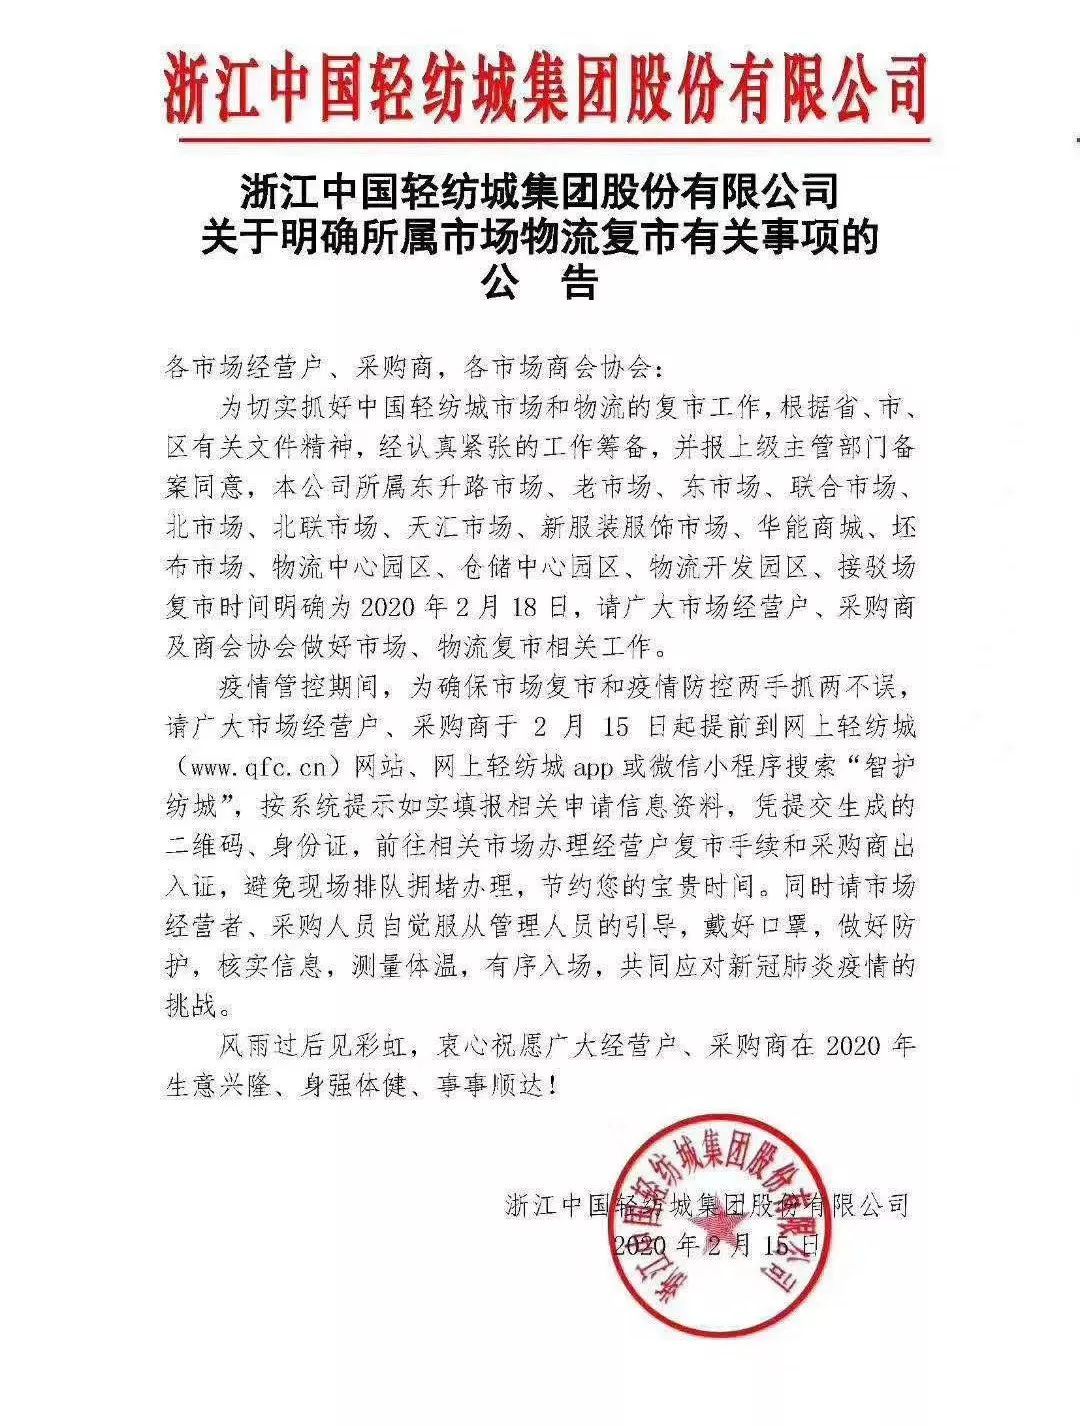 记者从中国东方丝绸市场管理办公室获悉,按照上级部署,为确保疫情防控